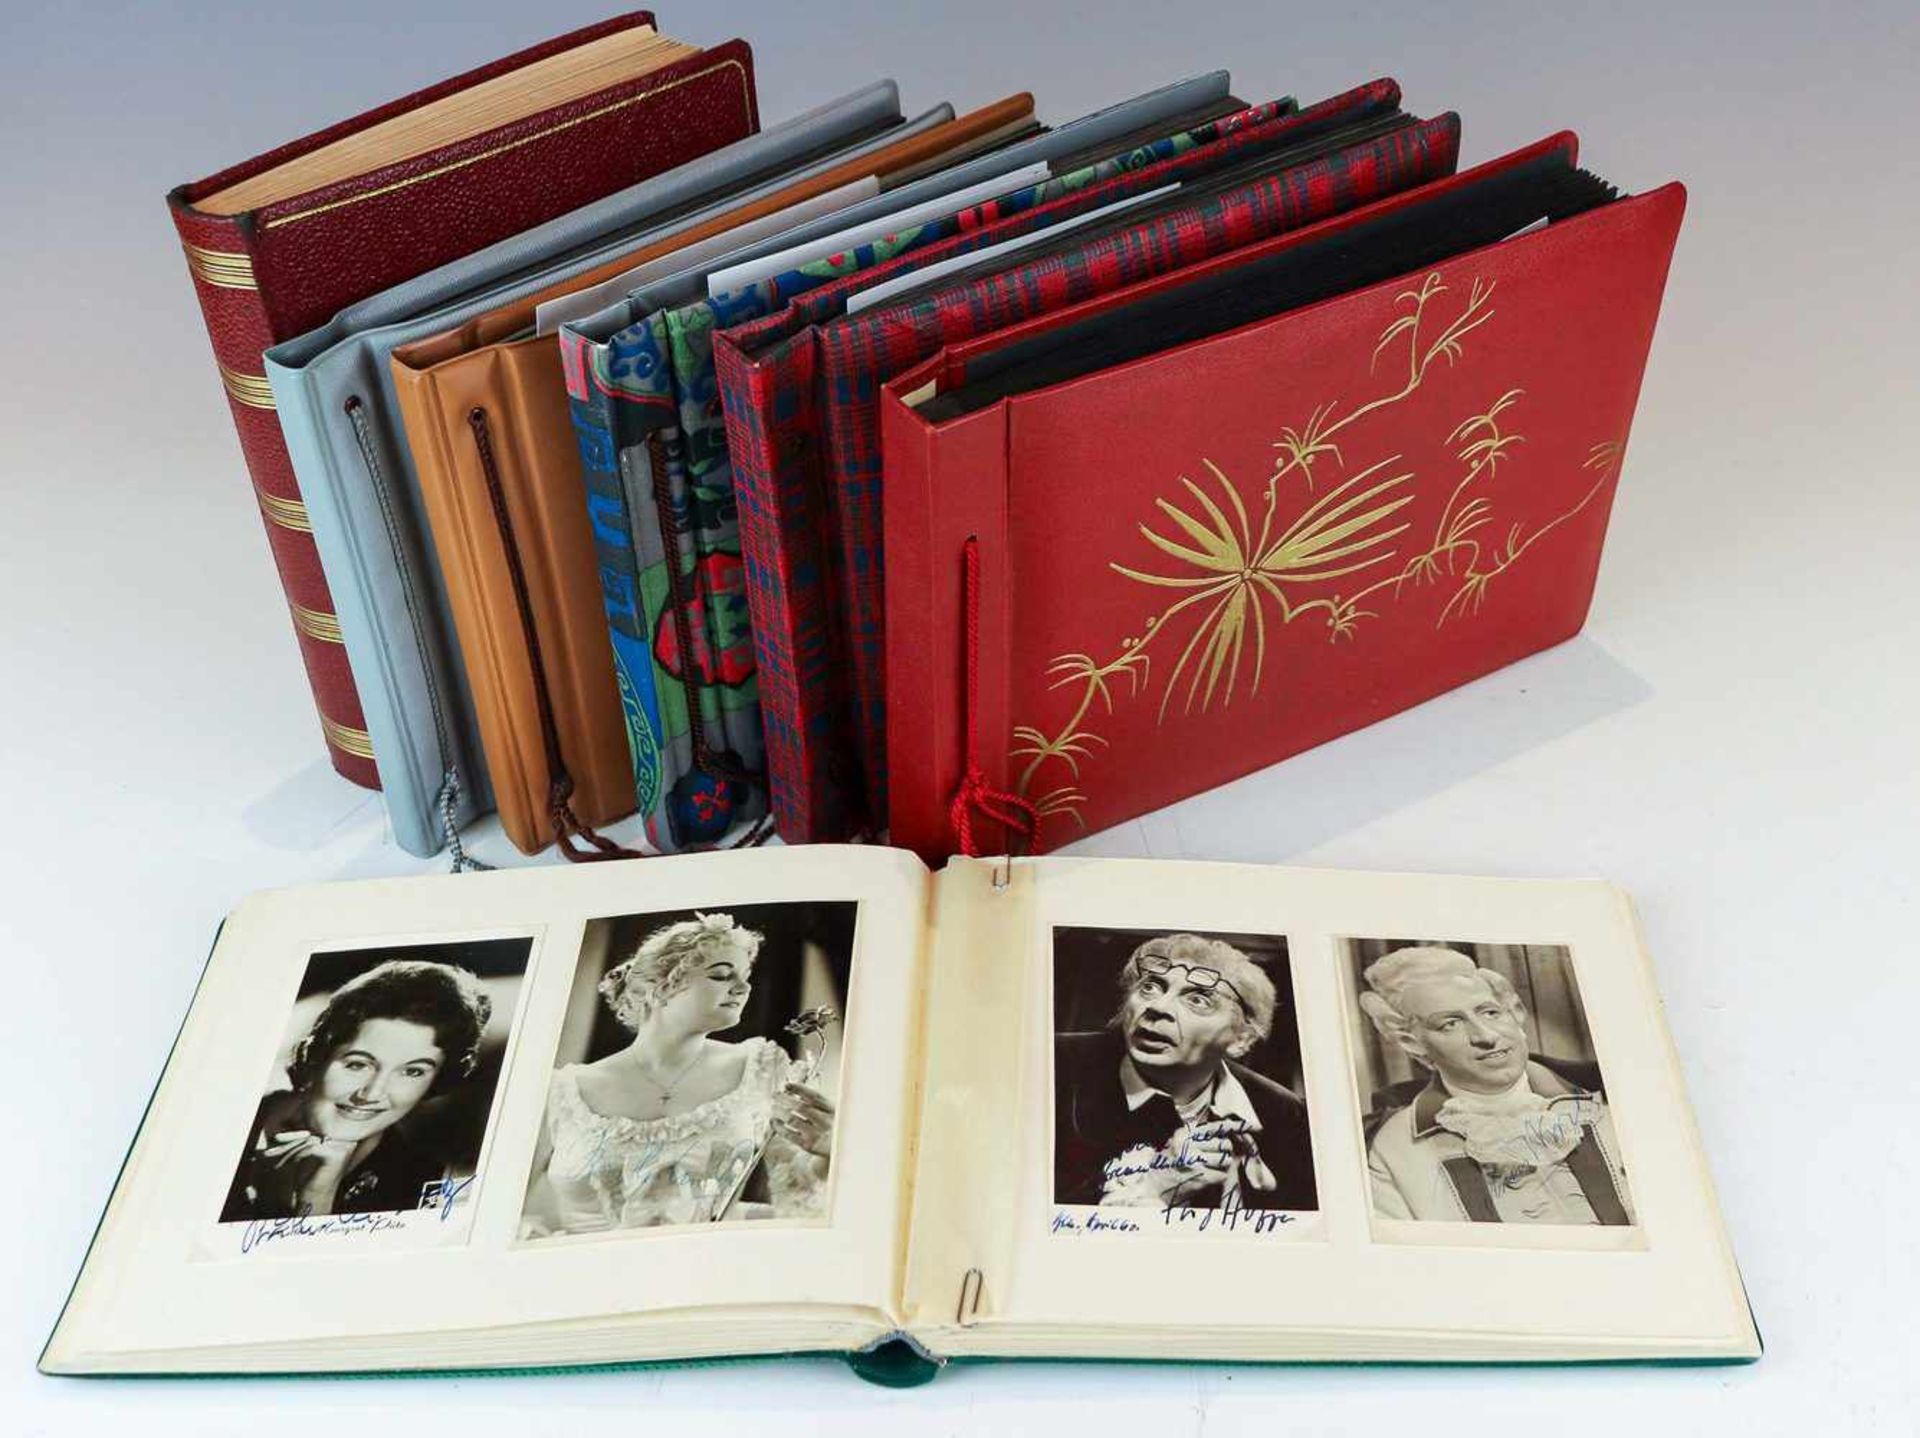 Sammlung von ca. 450 Autogrammpostkartenum 1957-1971Porträts, Bühnenszenen und Fotografien (davon